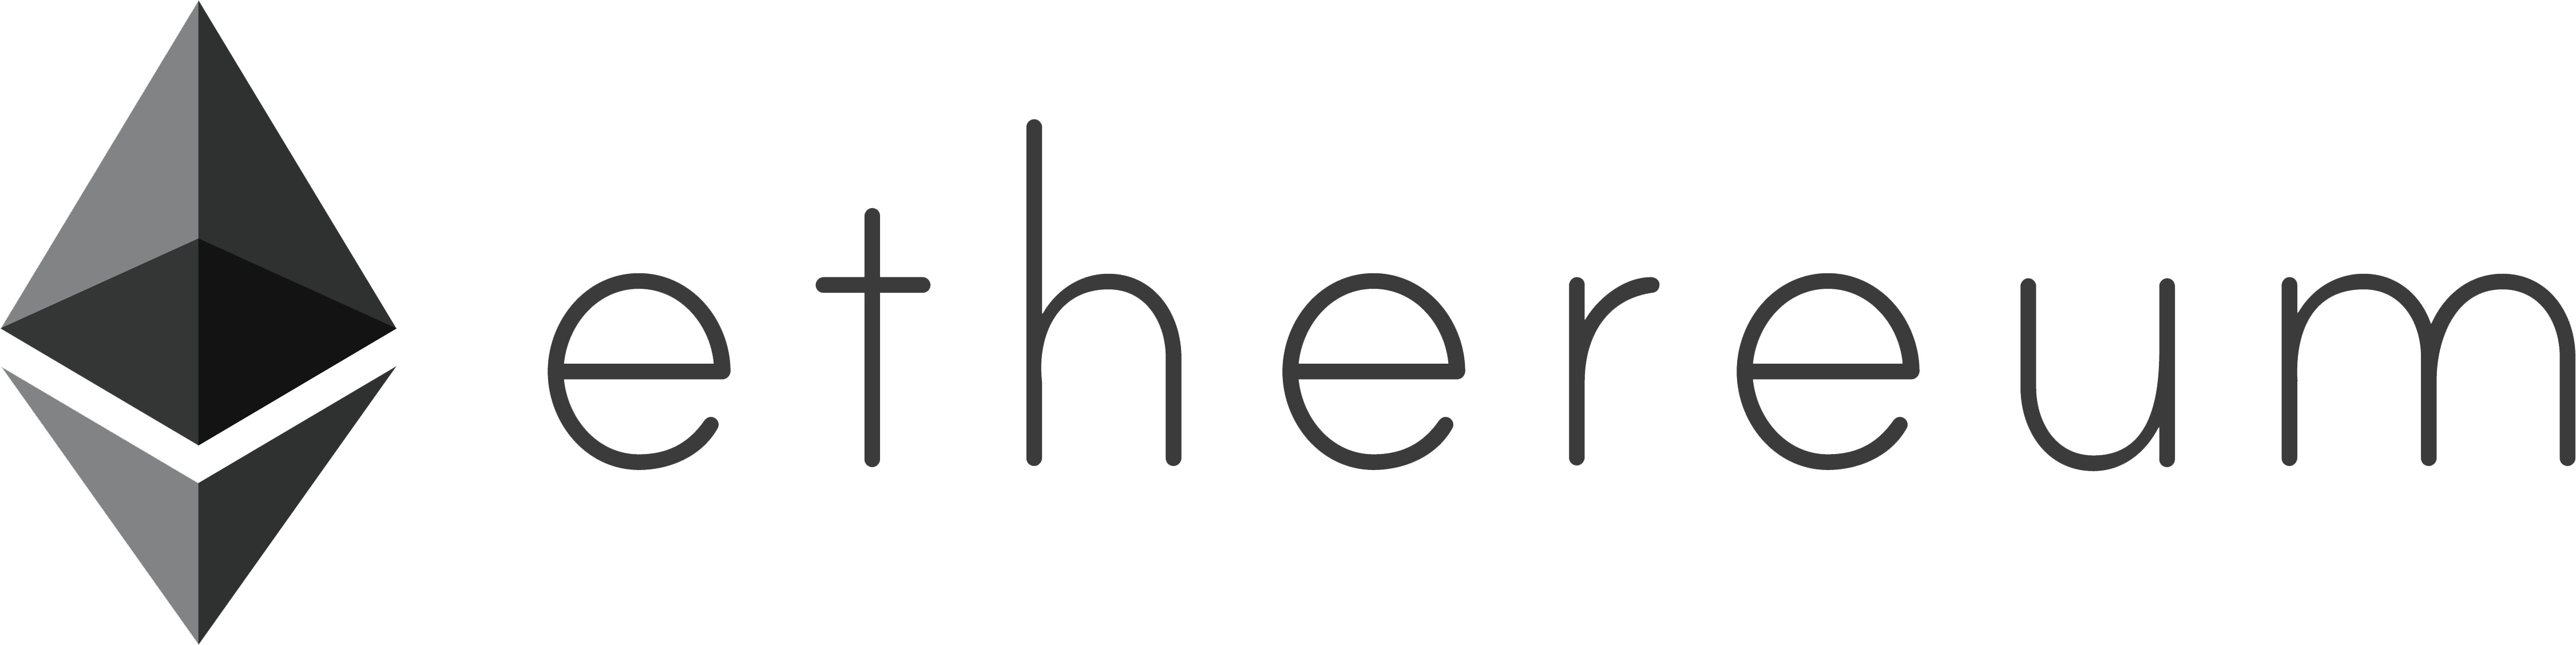 Ethereum Logo Long icons